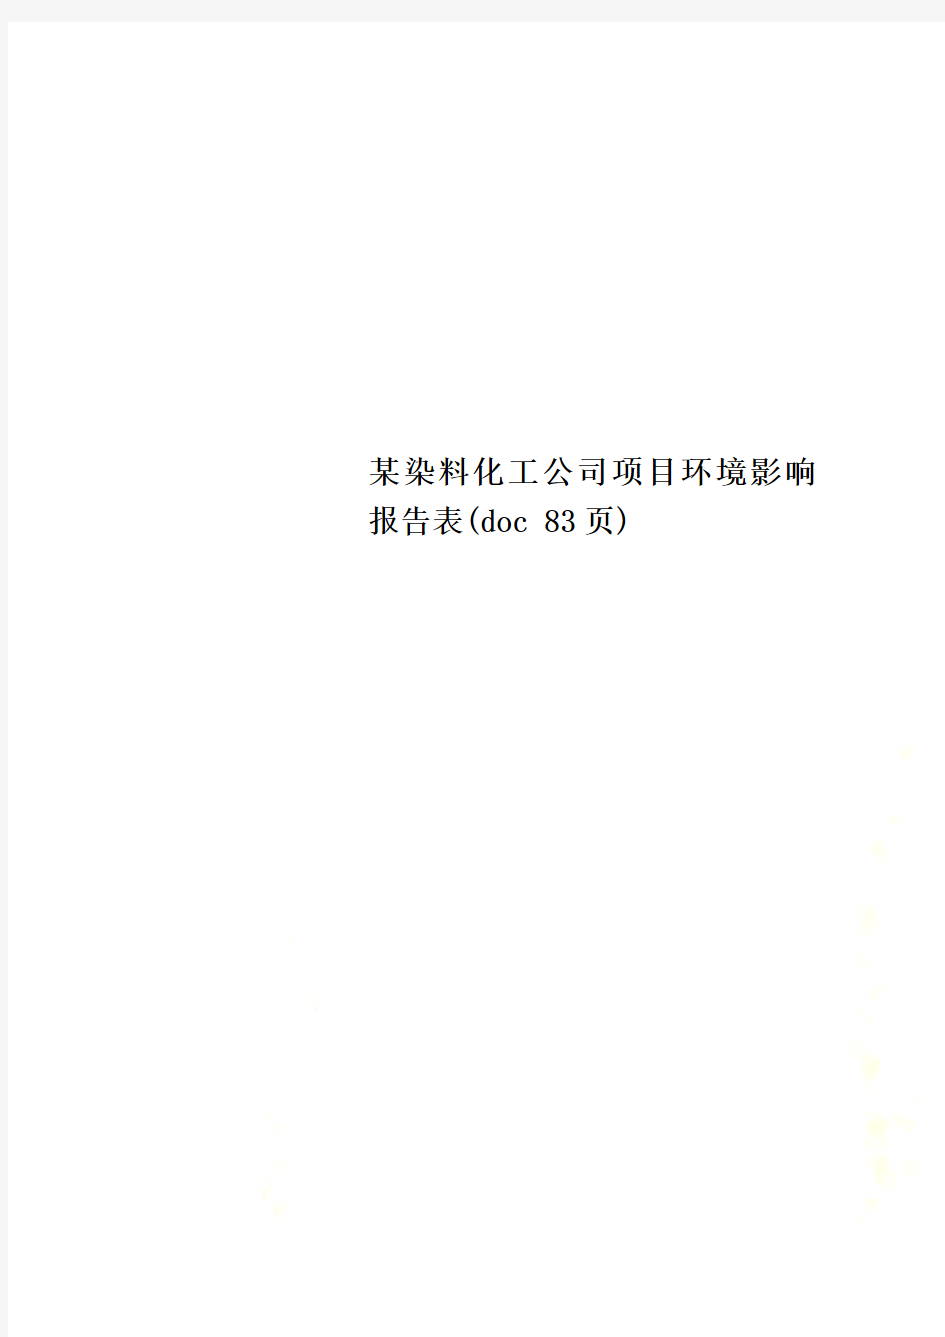 某染料化工公司项目环境影响报告表(doc 83页)